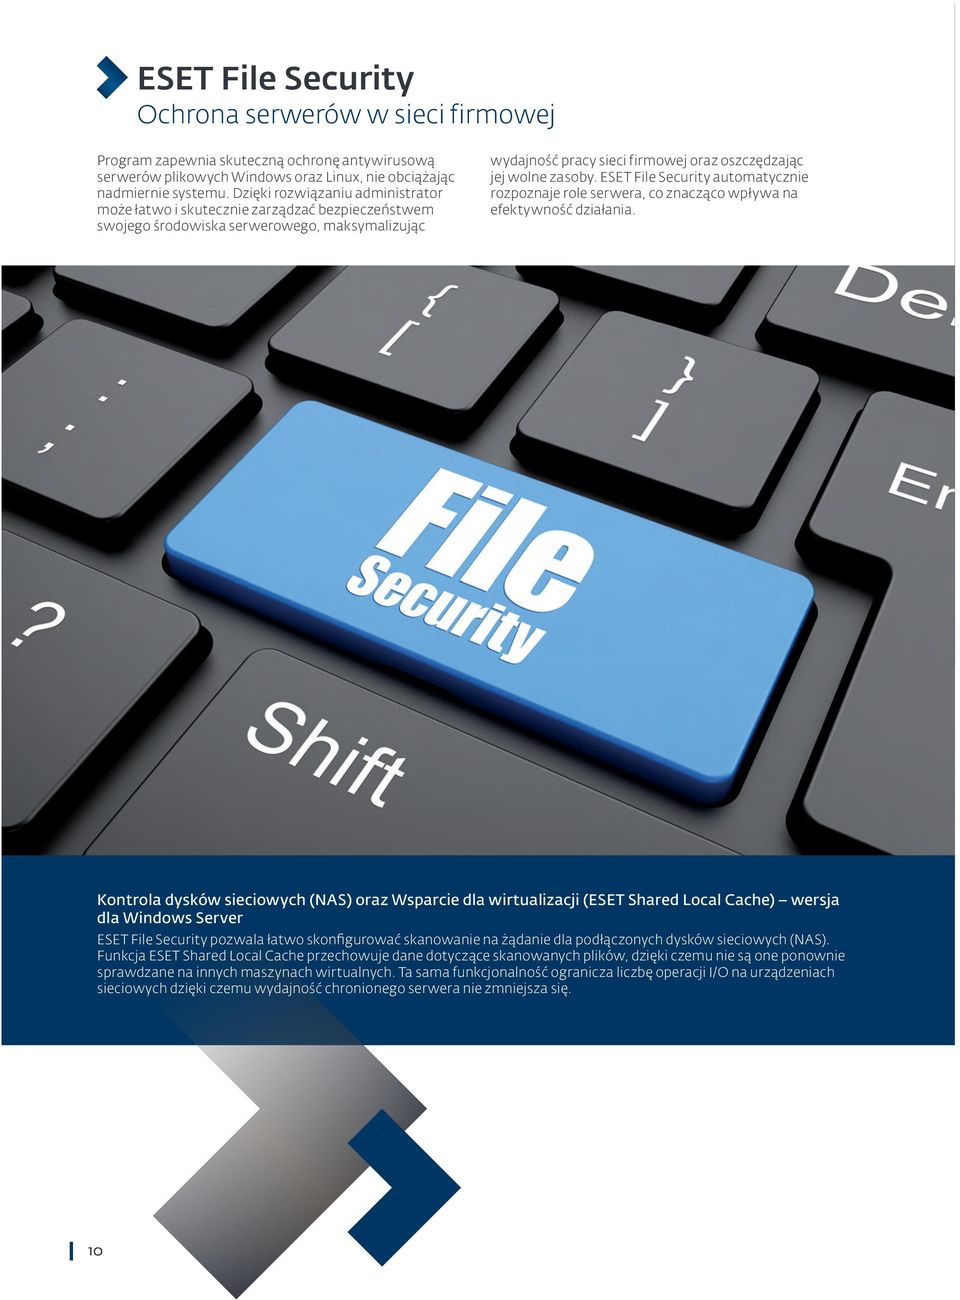 ESET File Security automatycznie rozpoznaje role serwera, co znacząco wpływa na efektywność działania.